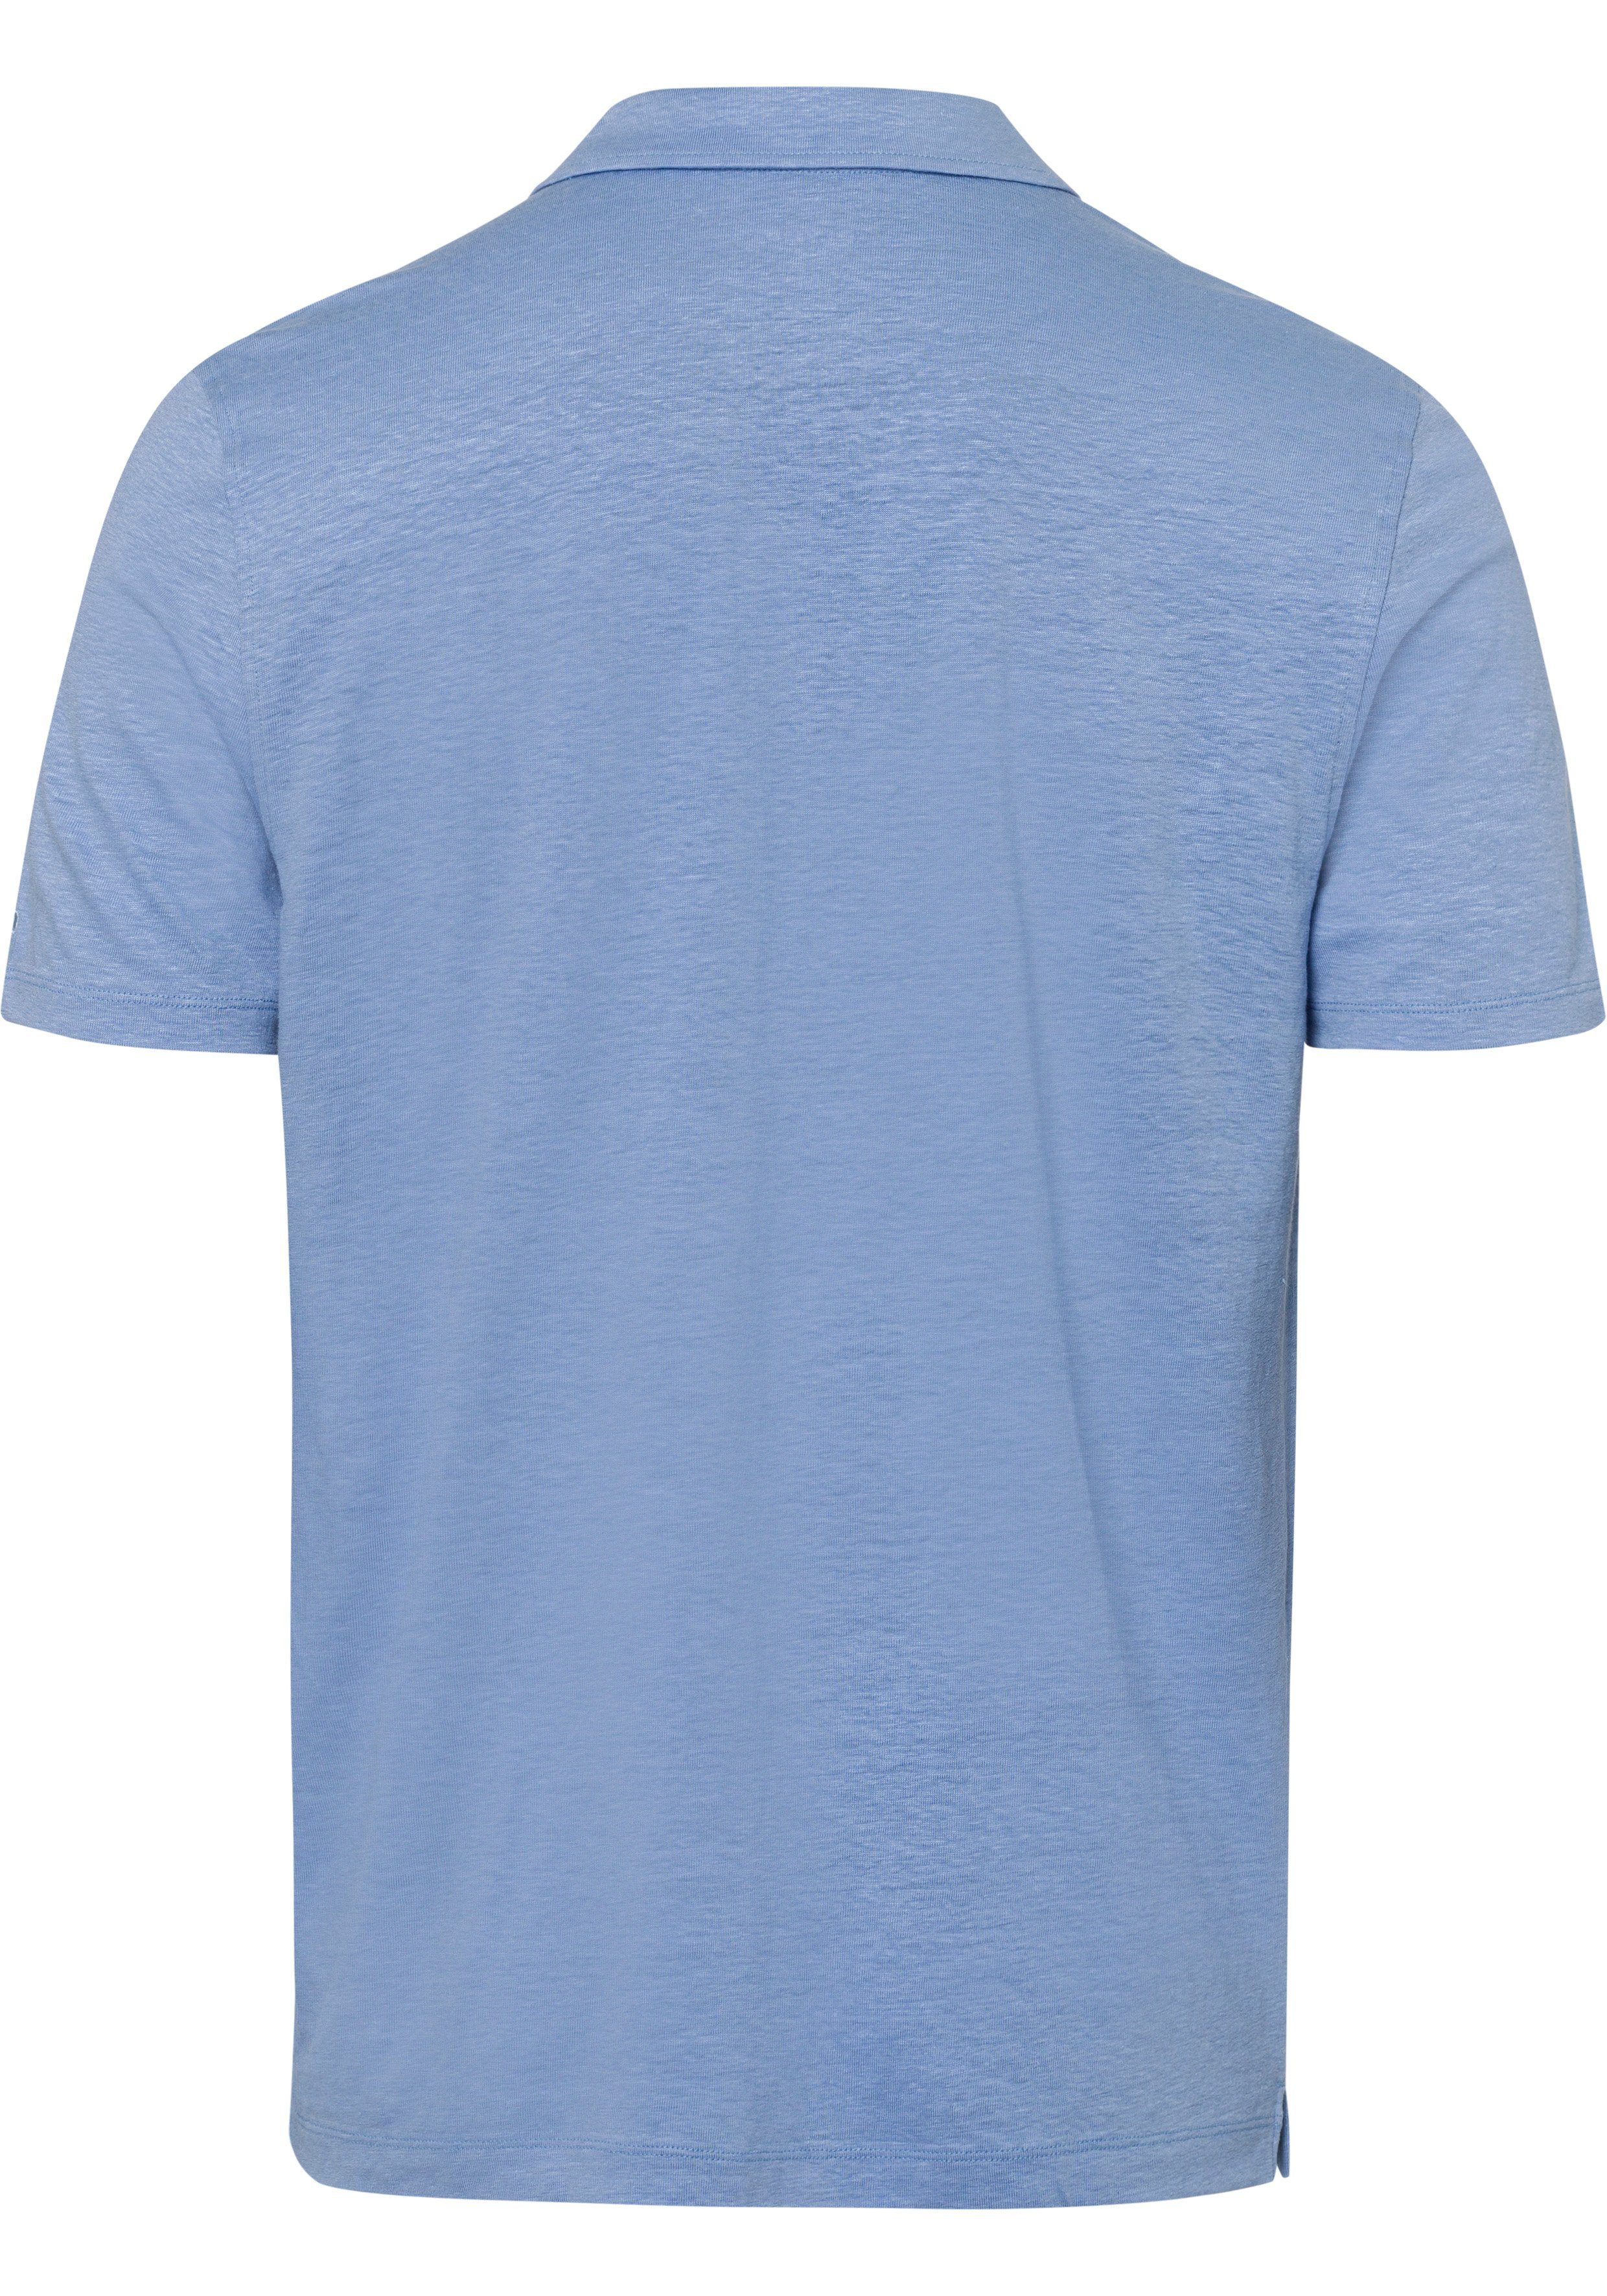 Hemden-Look Leinen in sommerlicher mit Casual-Optik OLYMP ozon Poloshirt im